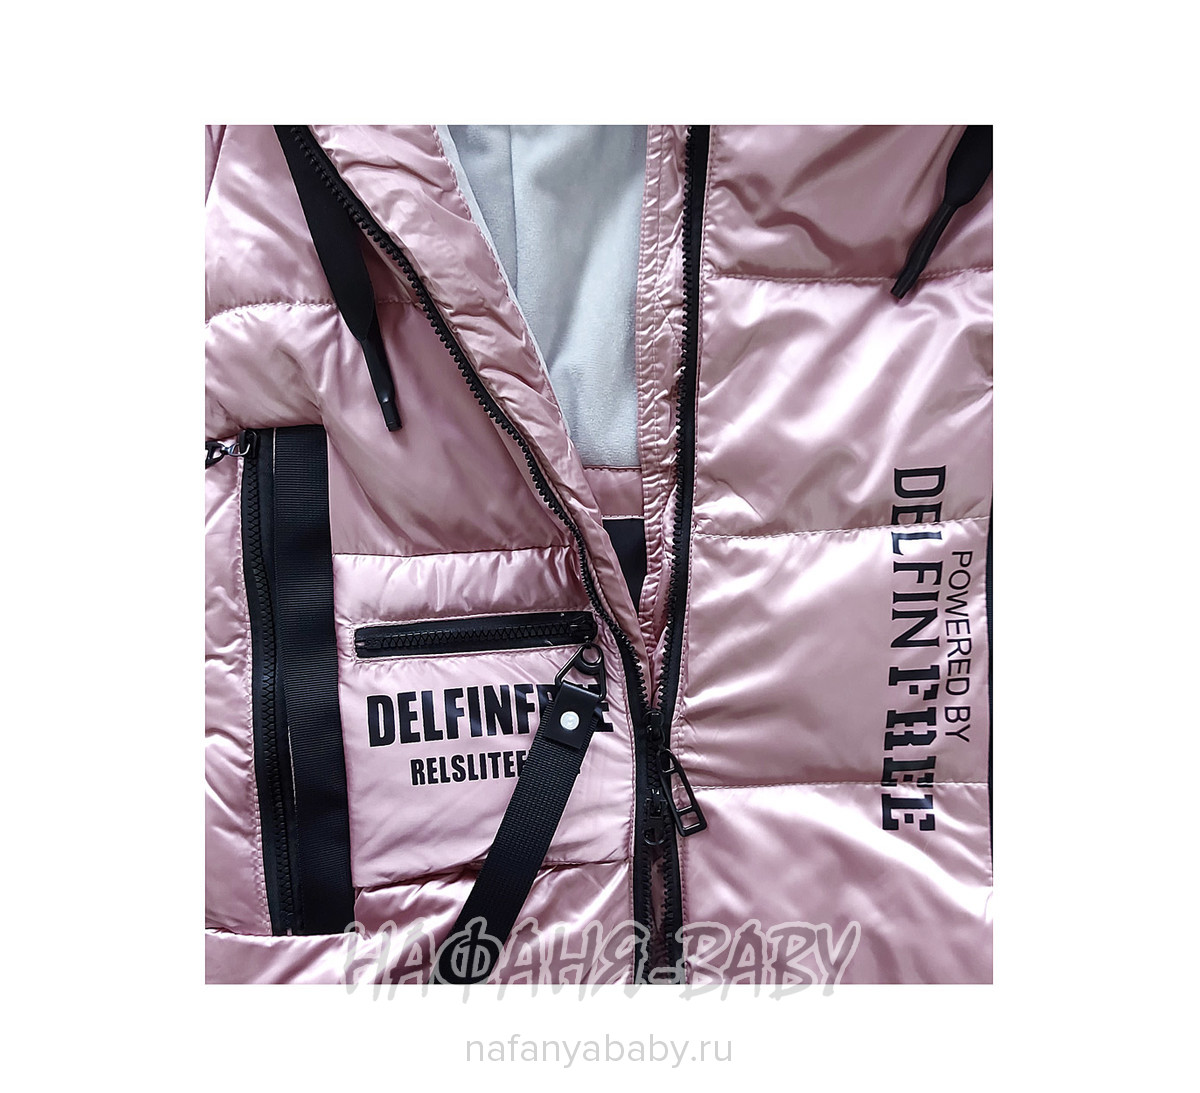 Зимнее пальто DELFIN-FREE, купить в интернет магазине Нафаня. арт: 2213.